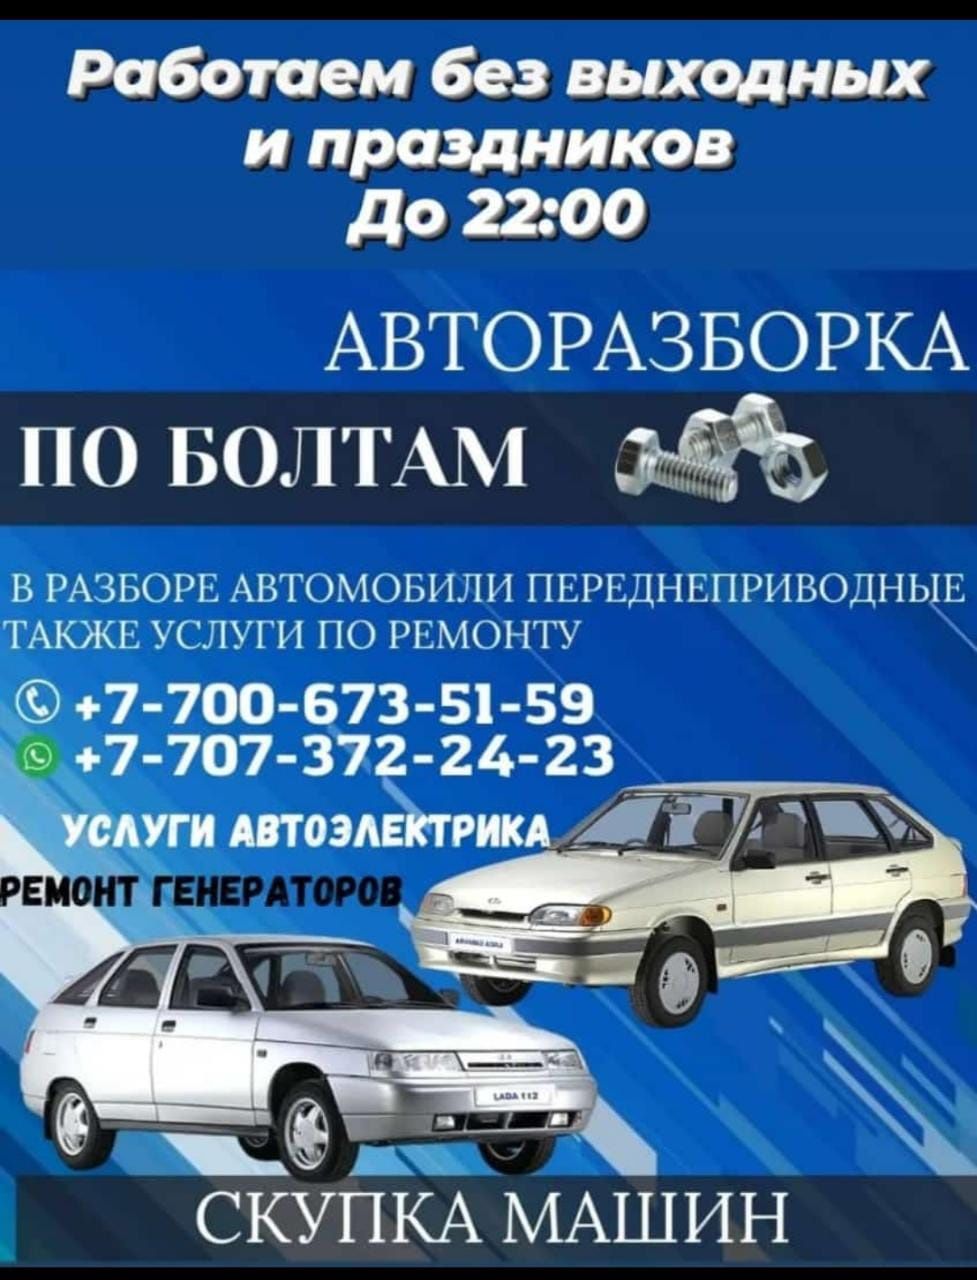 Продажа ВАЗ 2110 в Узбекистане